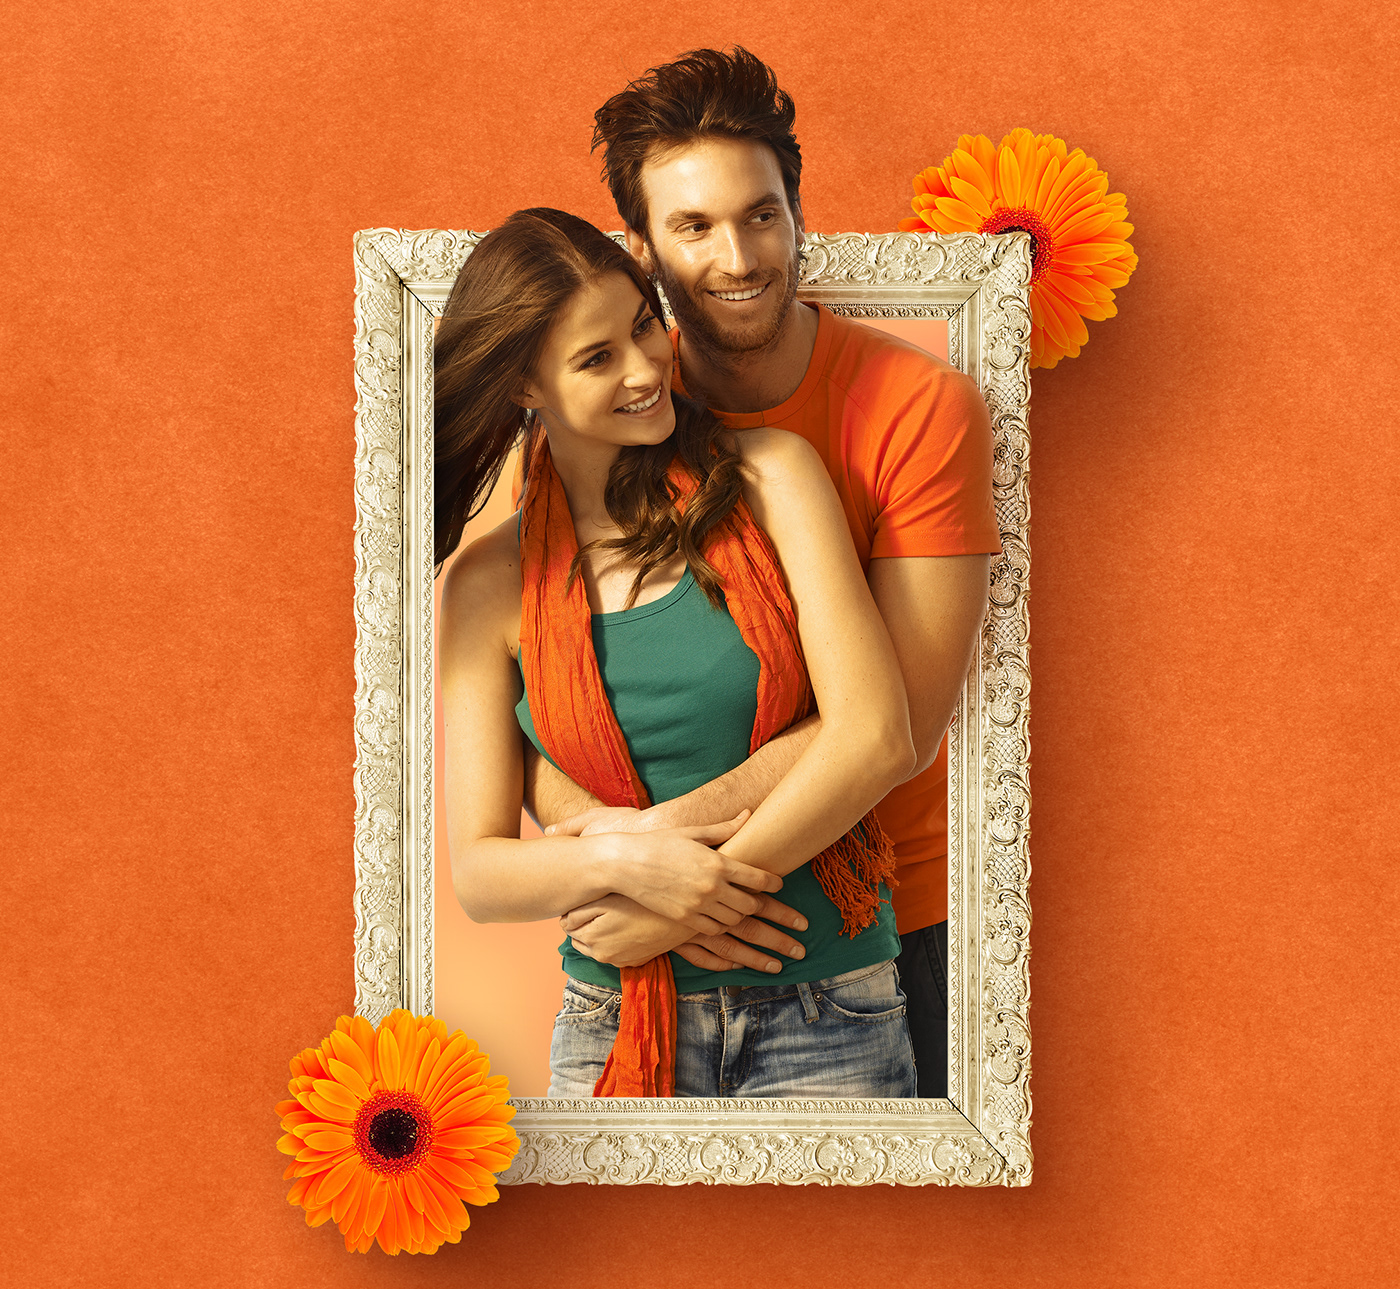 Dia dos namorados Shopping brasilia namorados amor valentines day varejo retouch colorfull orange